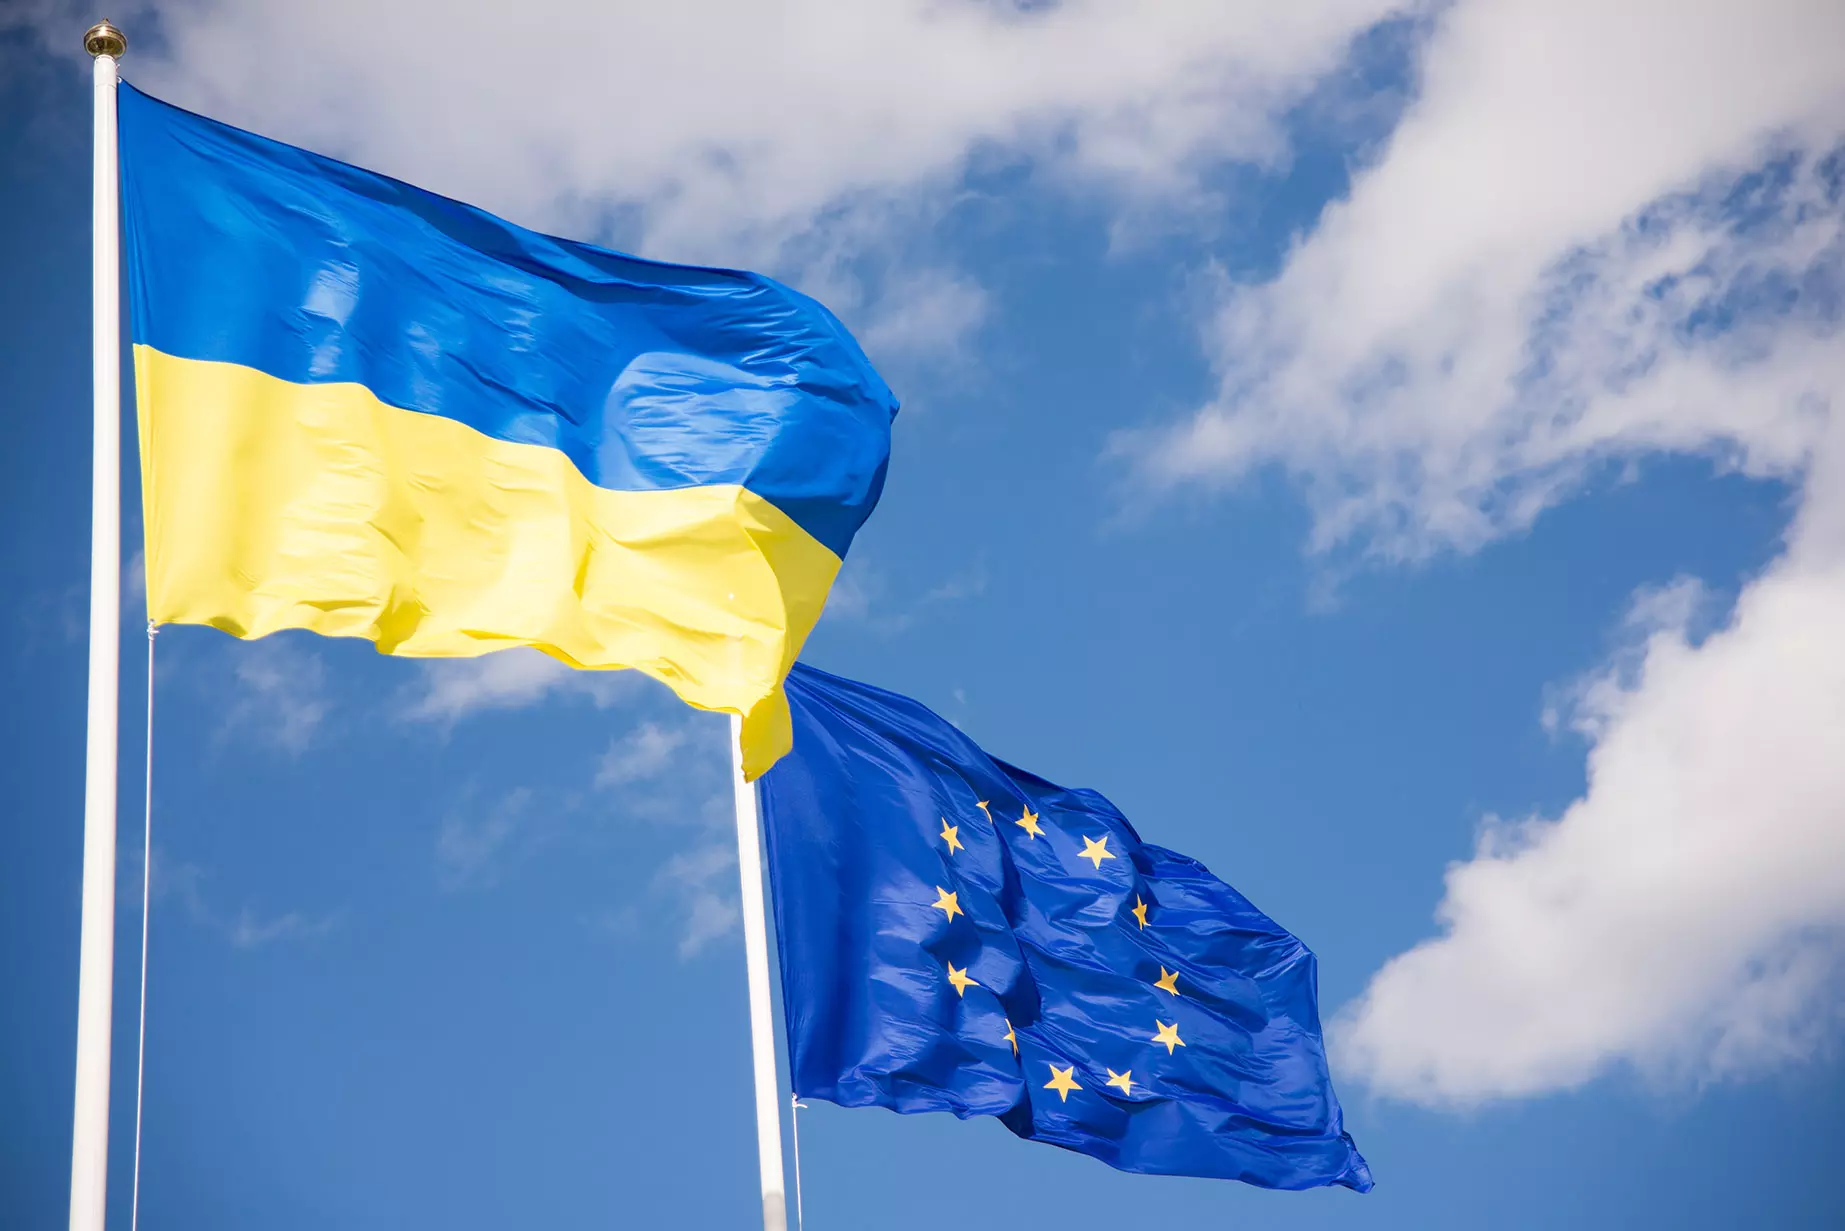 Tovább az eszkaláció útján: az EU biztonsági kötelezettségvállalási megállapodást írt alá Ukrajnával